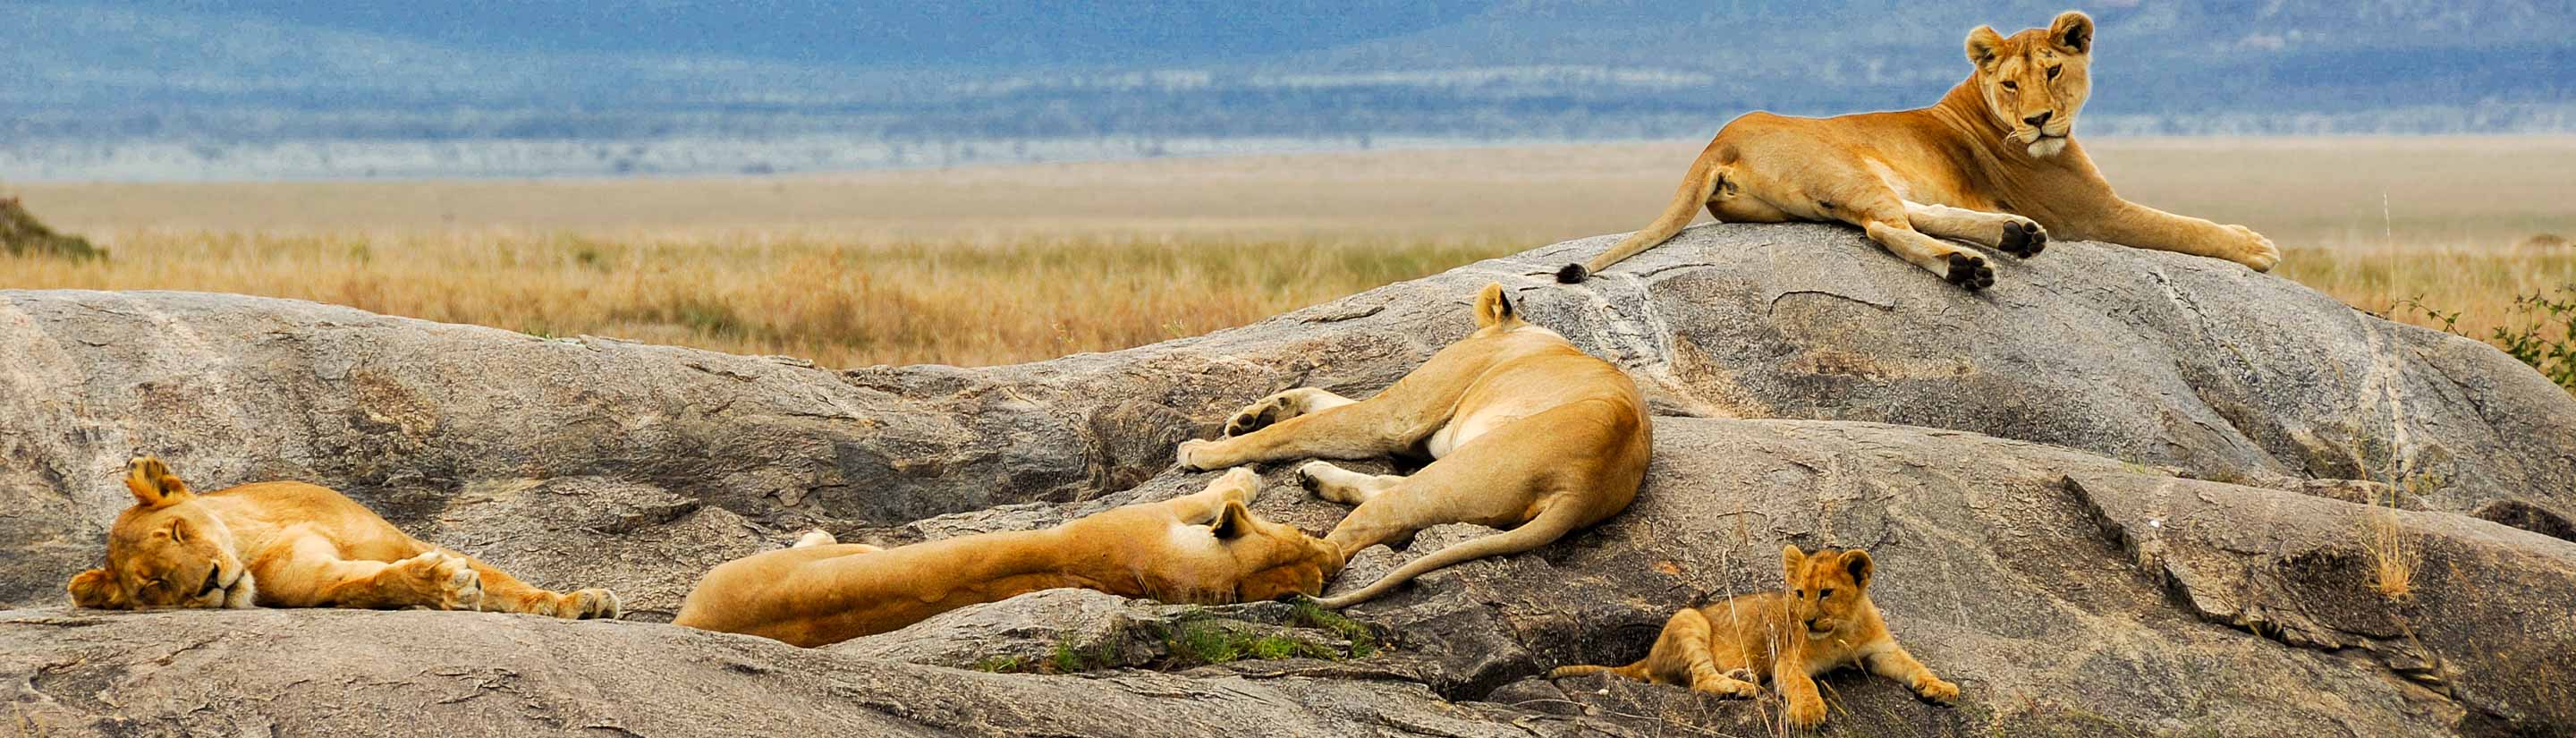 Kenia-Rundreise: der Safari Klassiker 